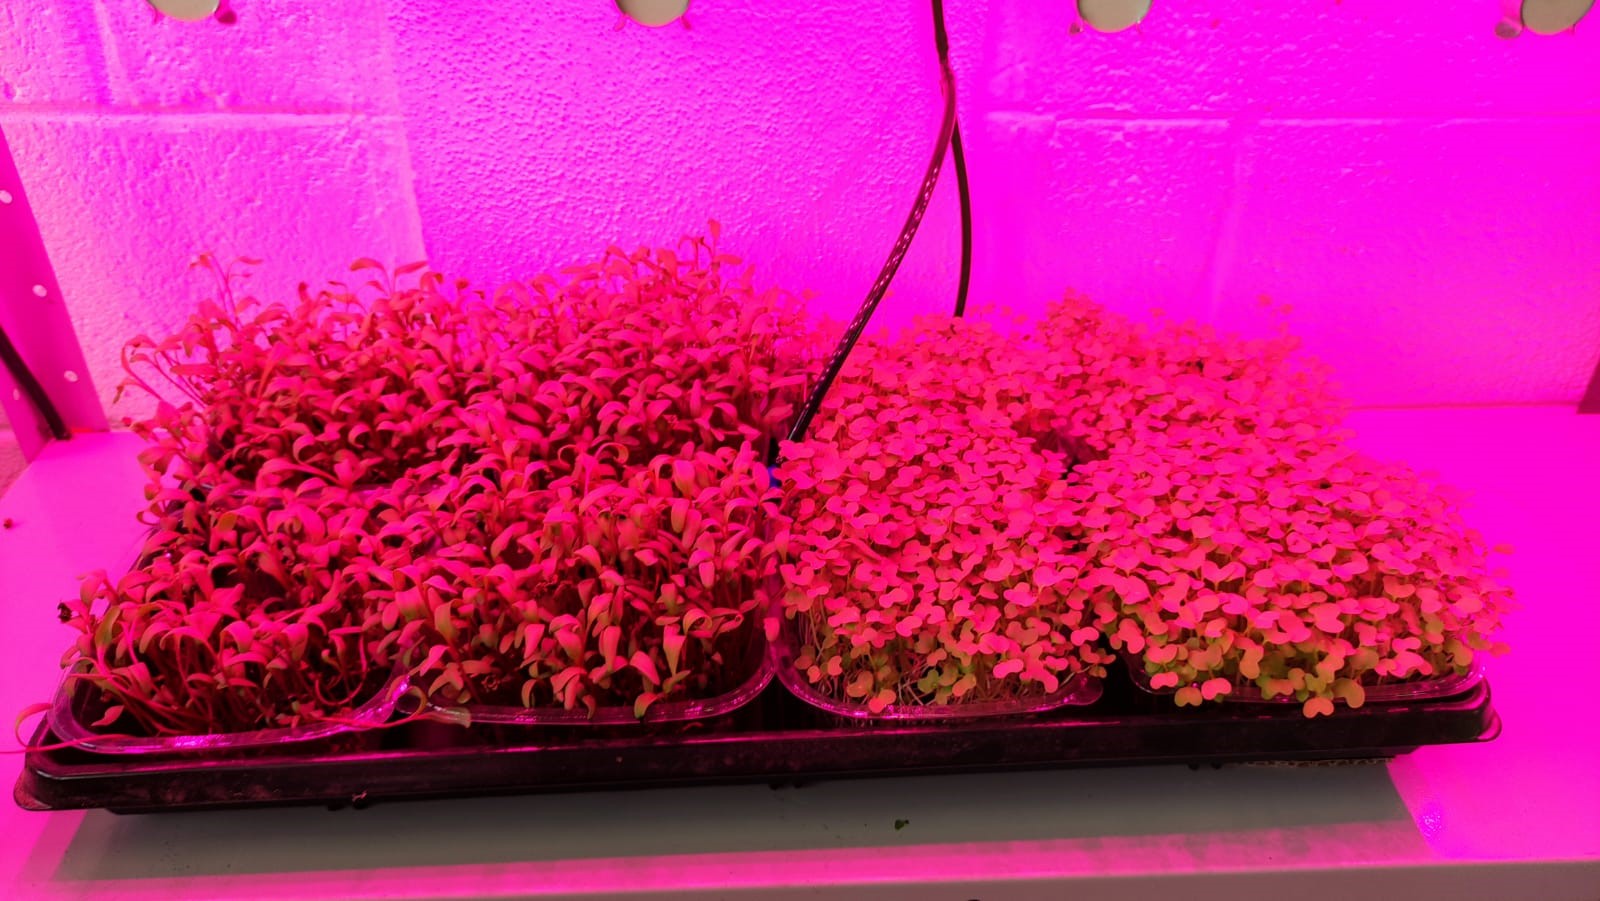  Engenharia Agronômica realiza produção de microverdes em cultivo indoor